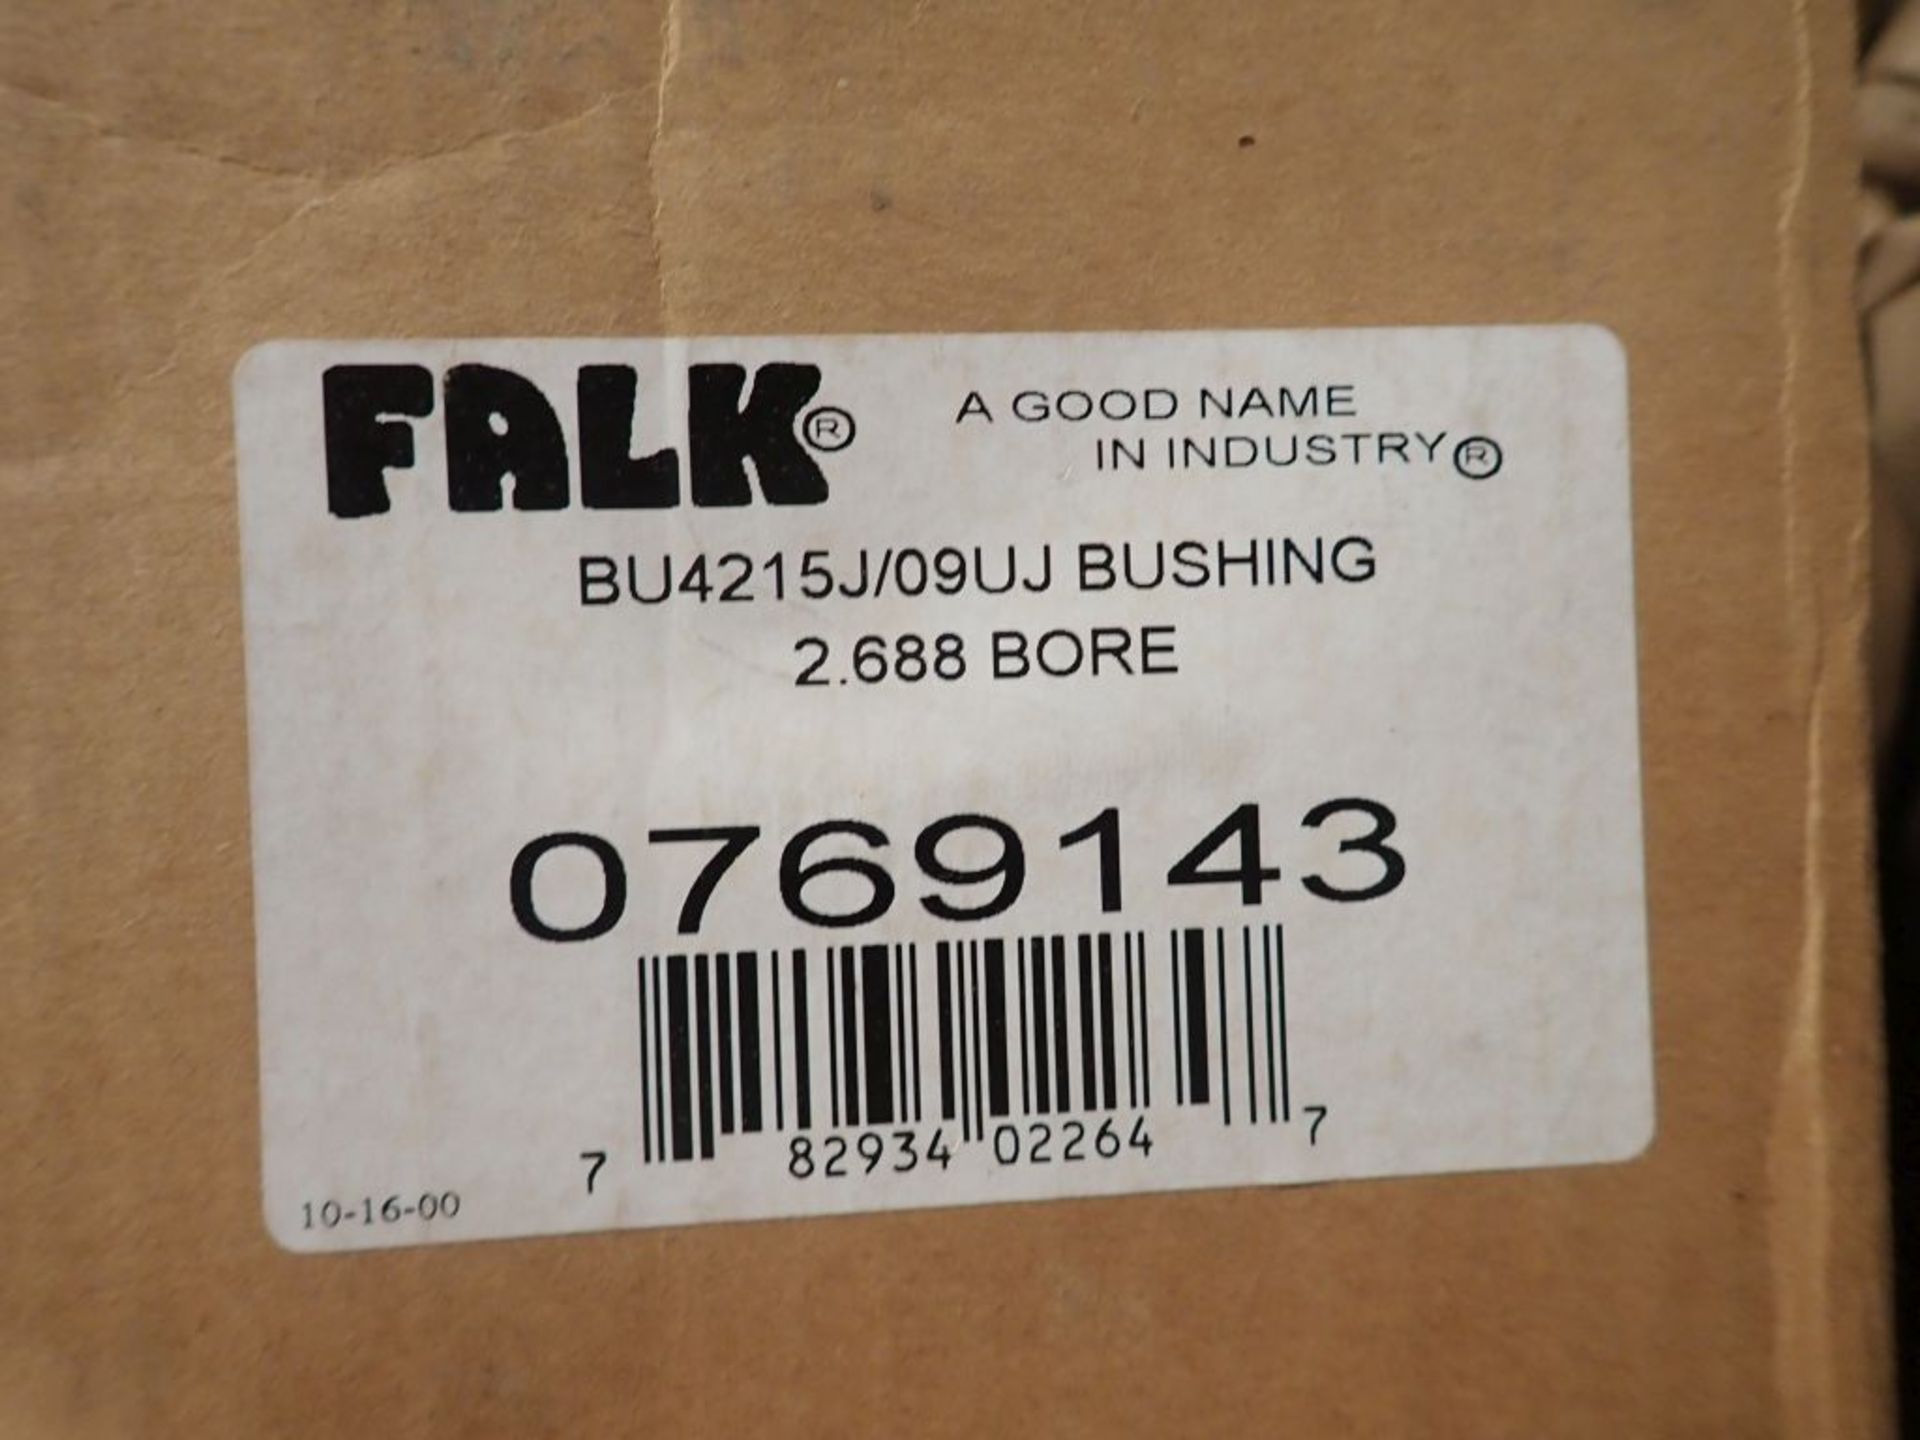 Lot of Assorted Falk Components - (1) Enclosed Gear Drive Model No. 5215 J05 A, 4.923 Ratio; - Image 6 of 21